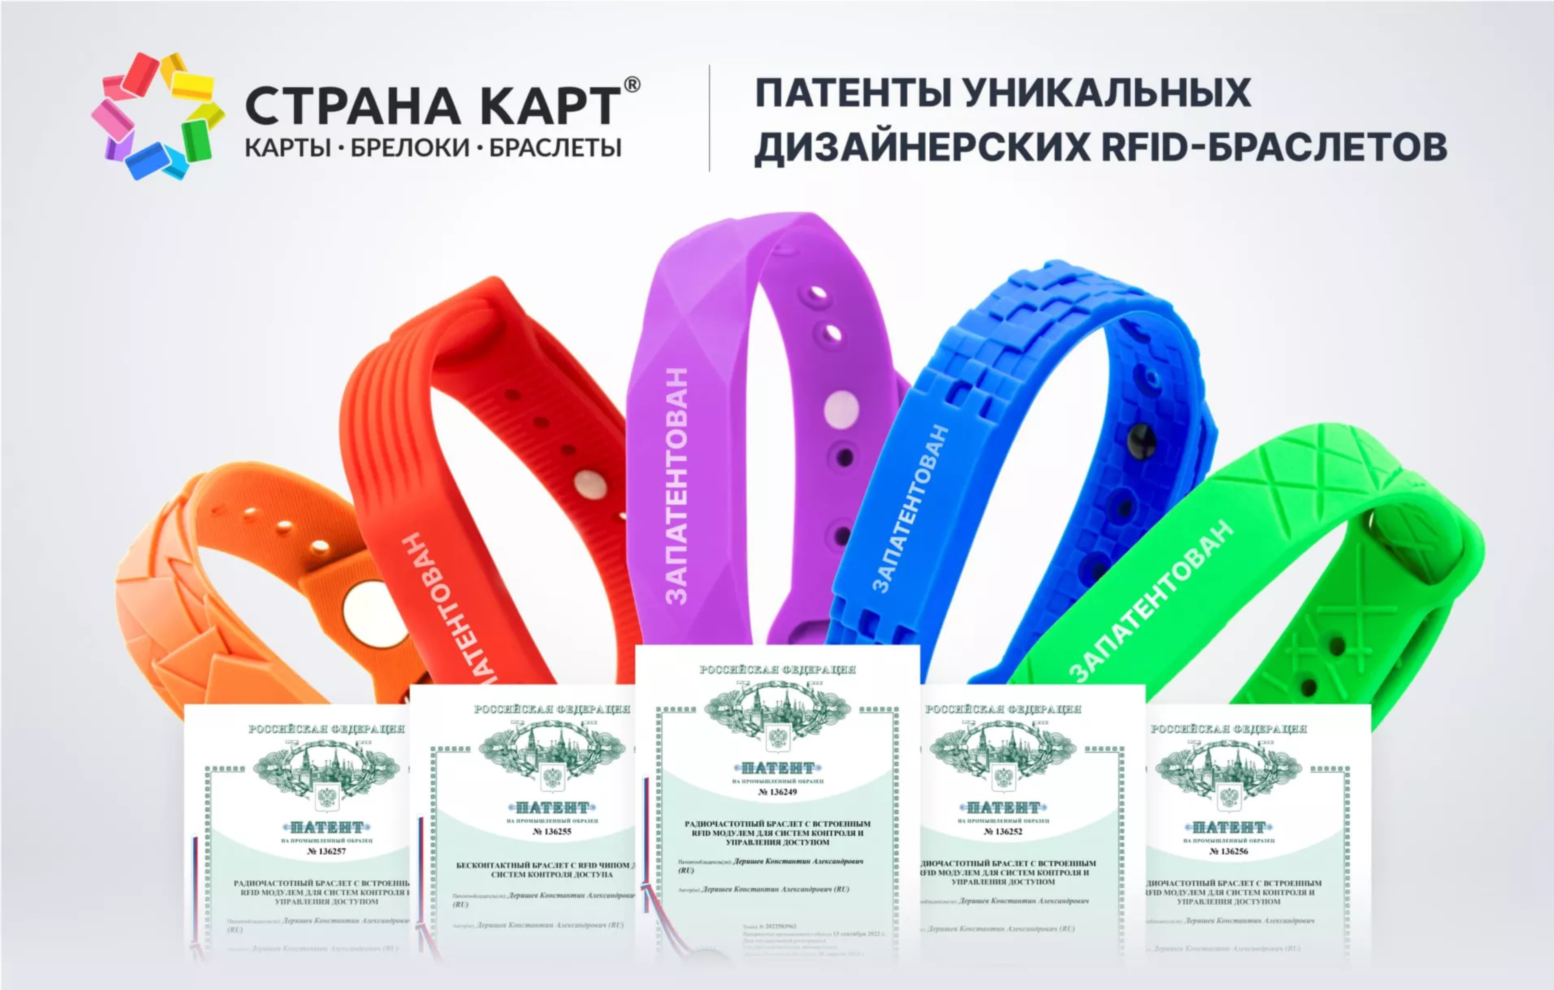 Запатентованные дизайнерский формы RFID-браслетов Компания «Страна Карт» получила патенты на пять уникальных дизайнерских RFID-браслетов